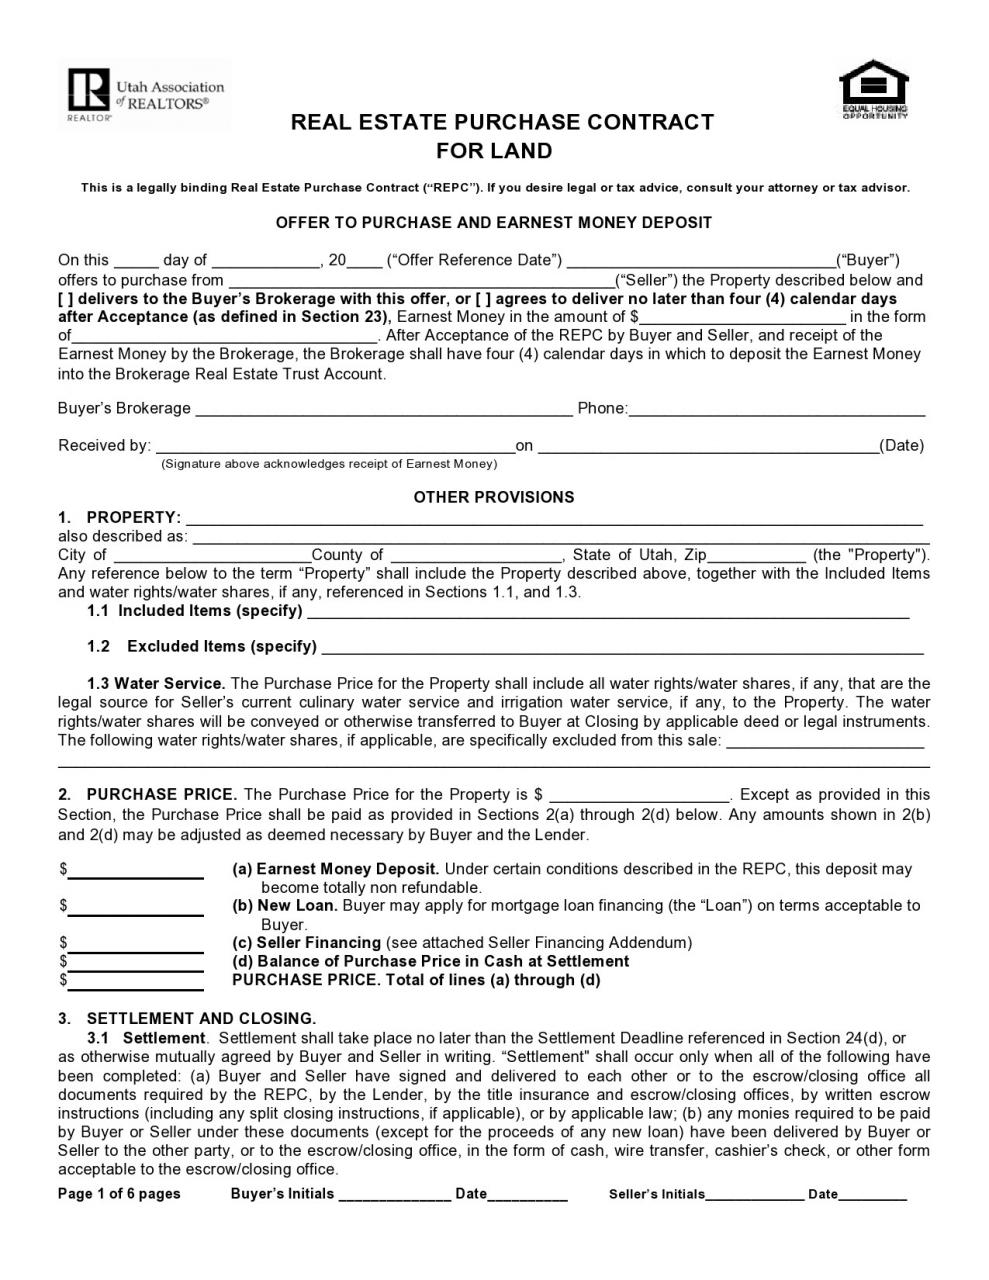 formulario de contrato de tierra gratis 18